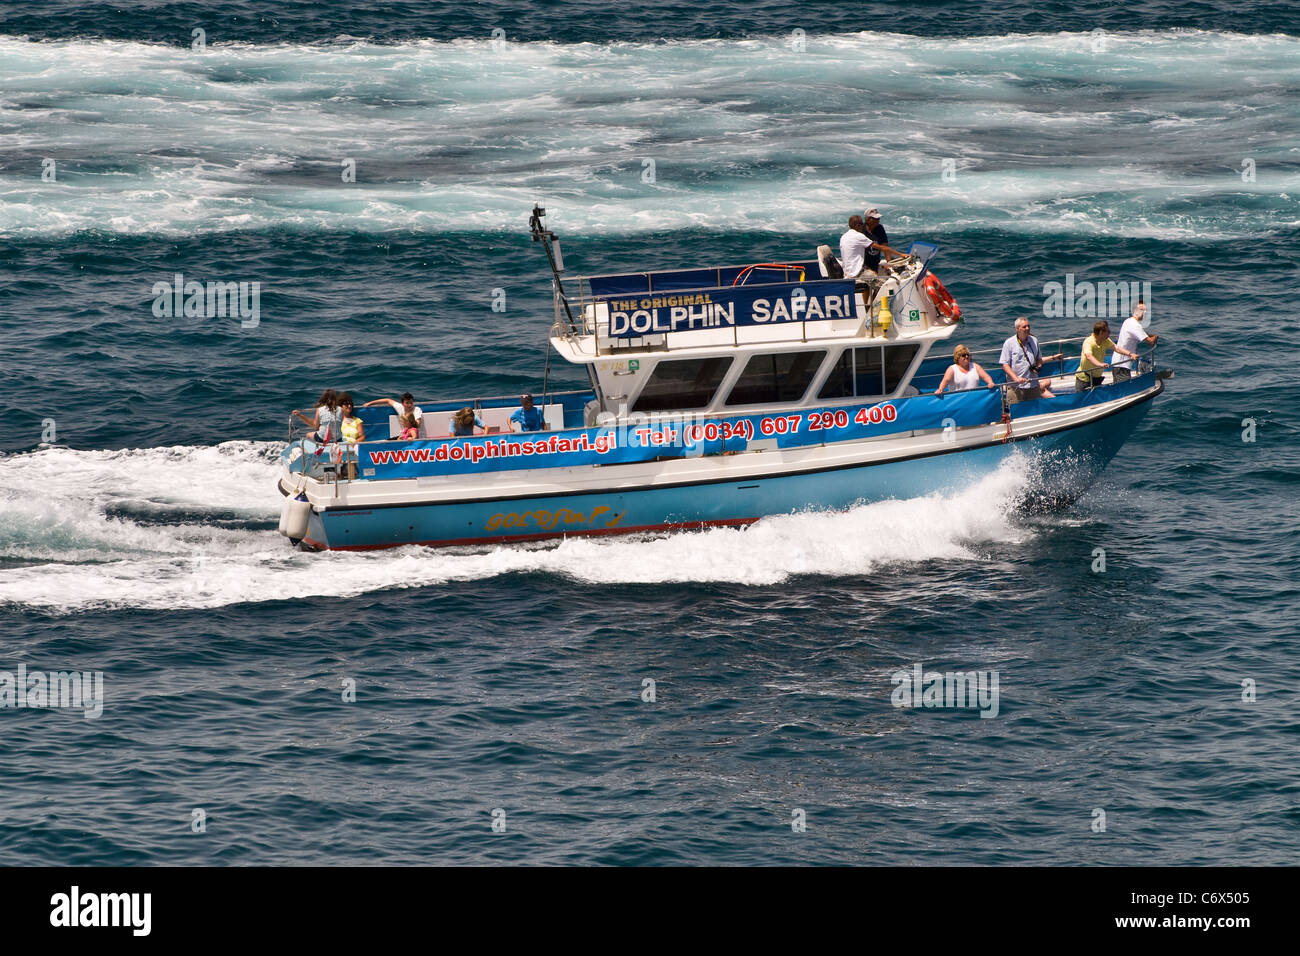 Il Dolphin Safari (avvistamento delfini) nave passeggeri. Gibilterra, Mediterraneo, Europa Foto Stock